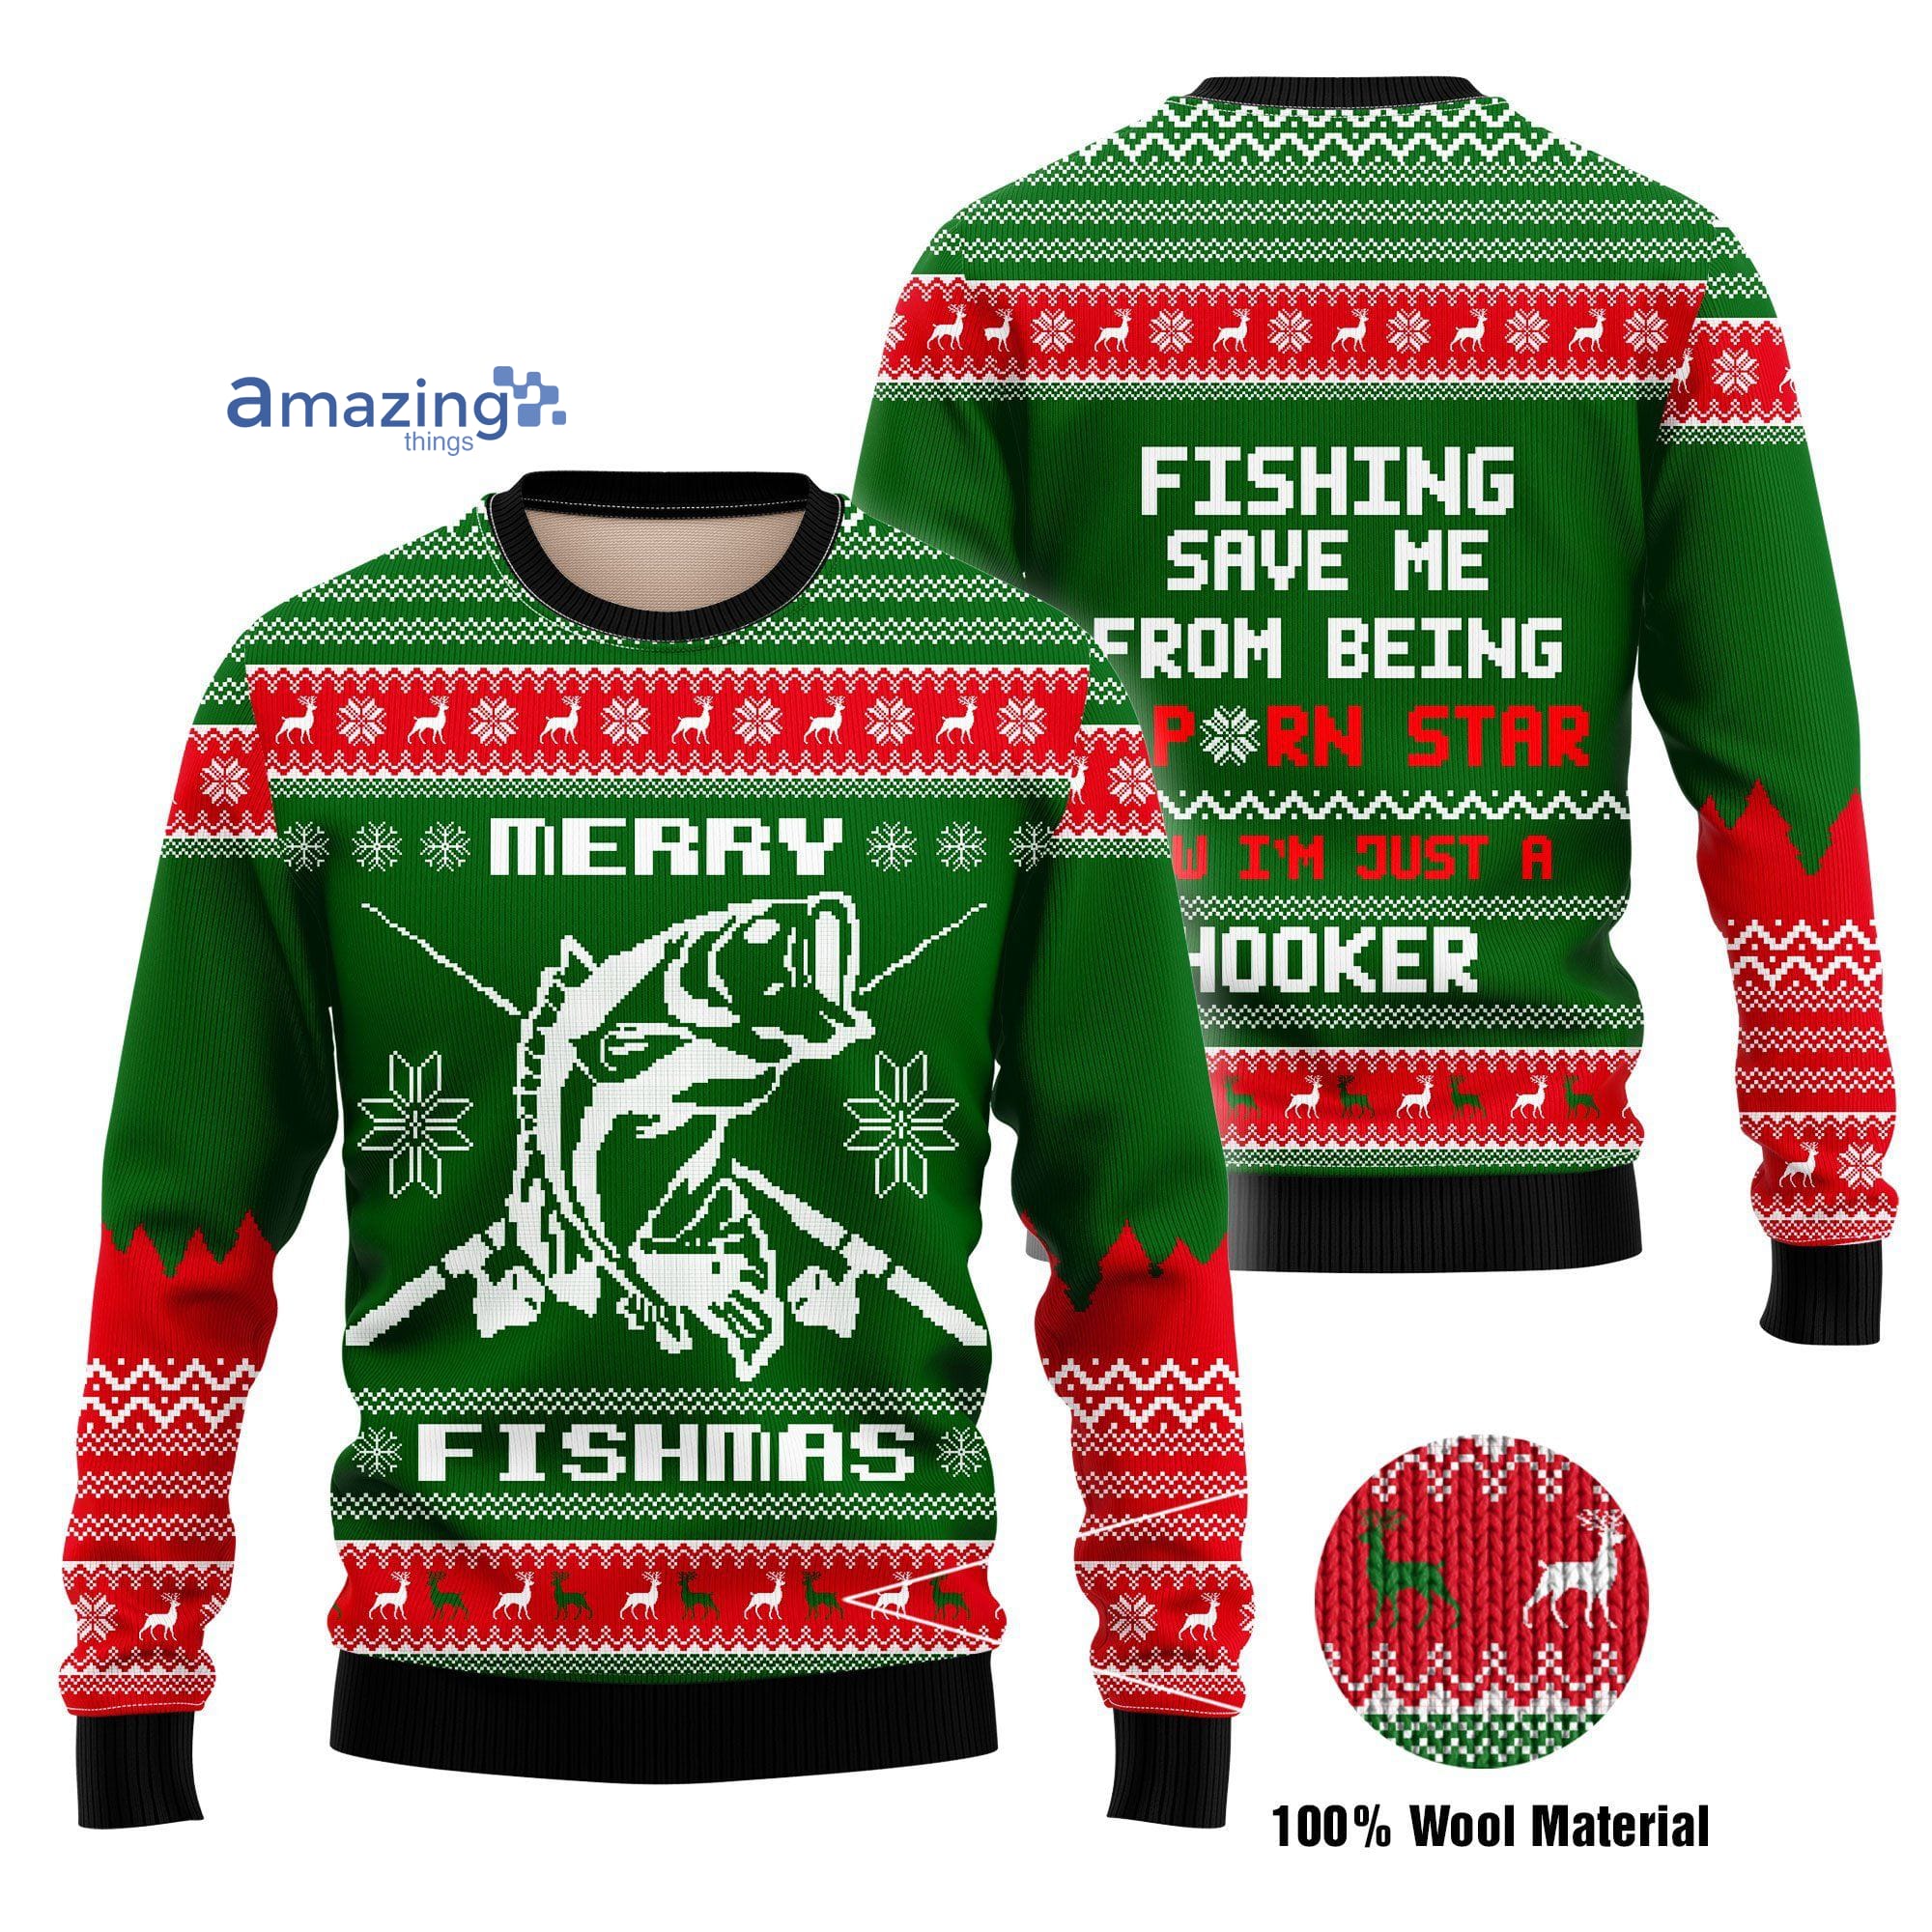 Fishing-Hooker Christmas Knitting Pattern Christmas Ugly Sweater